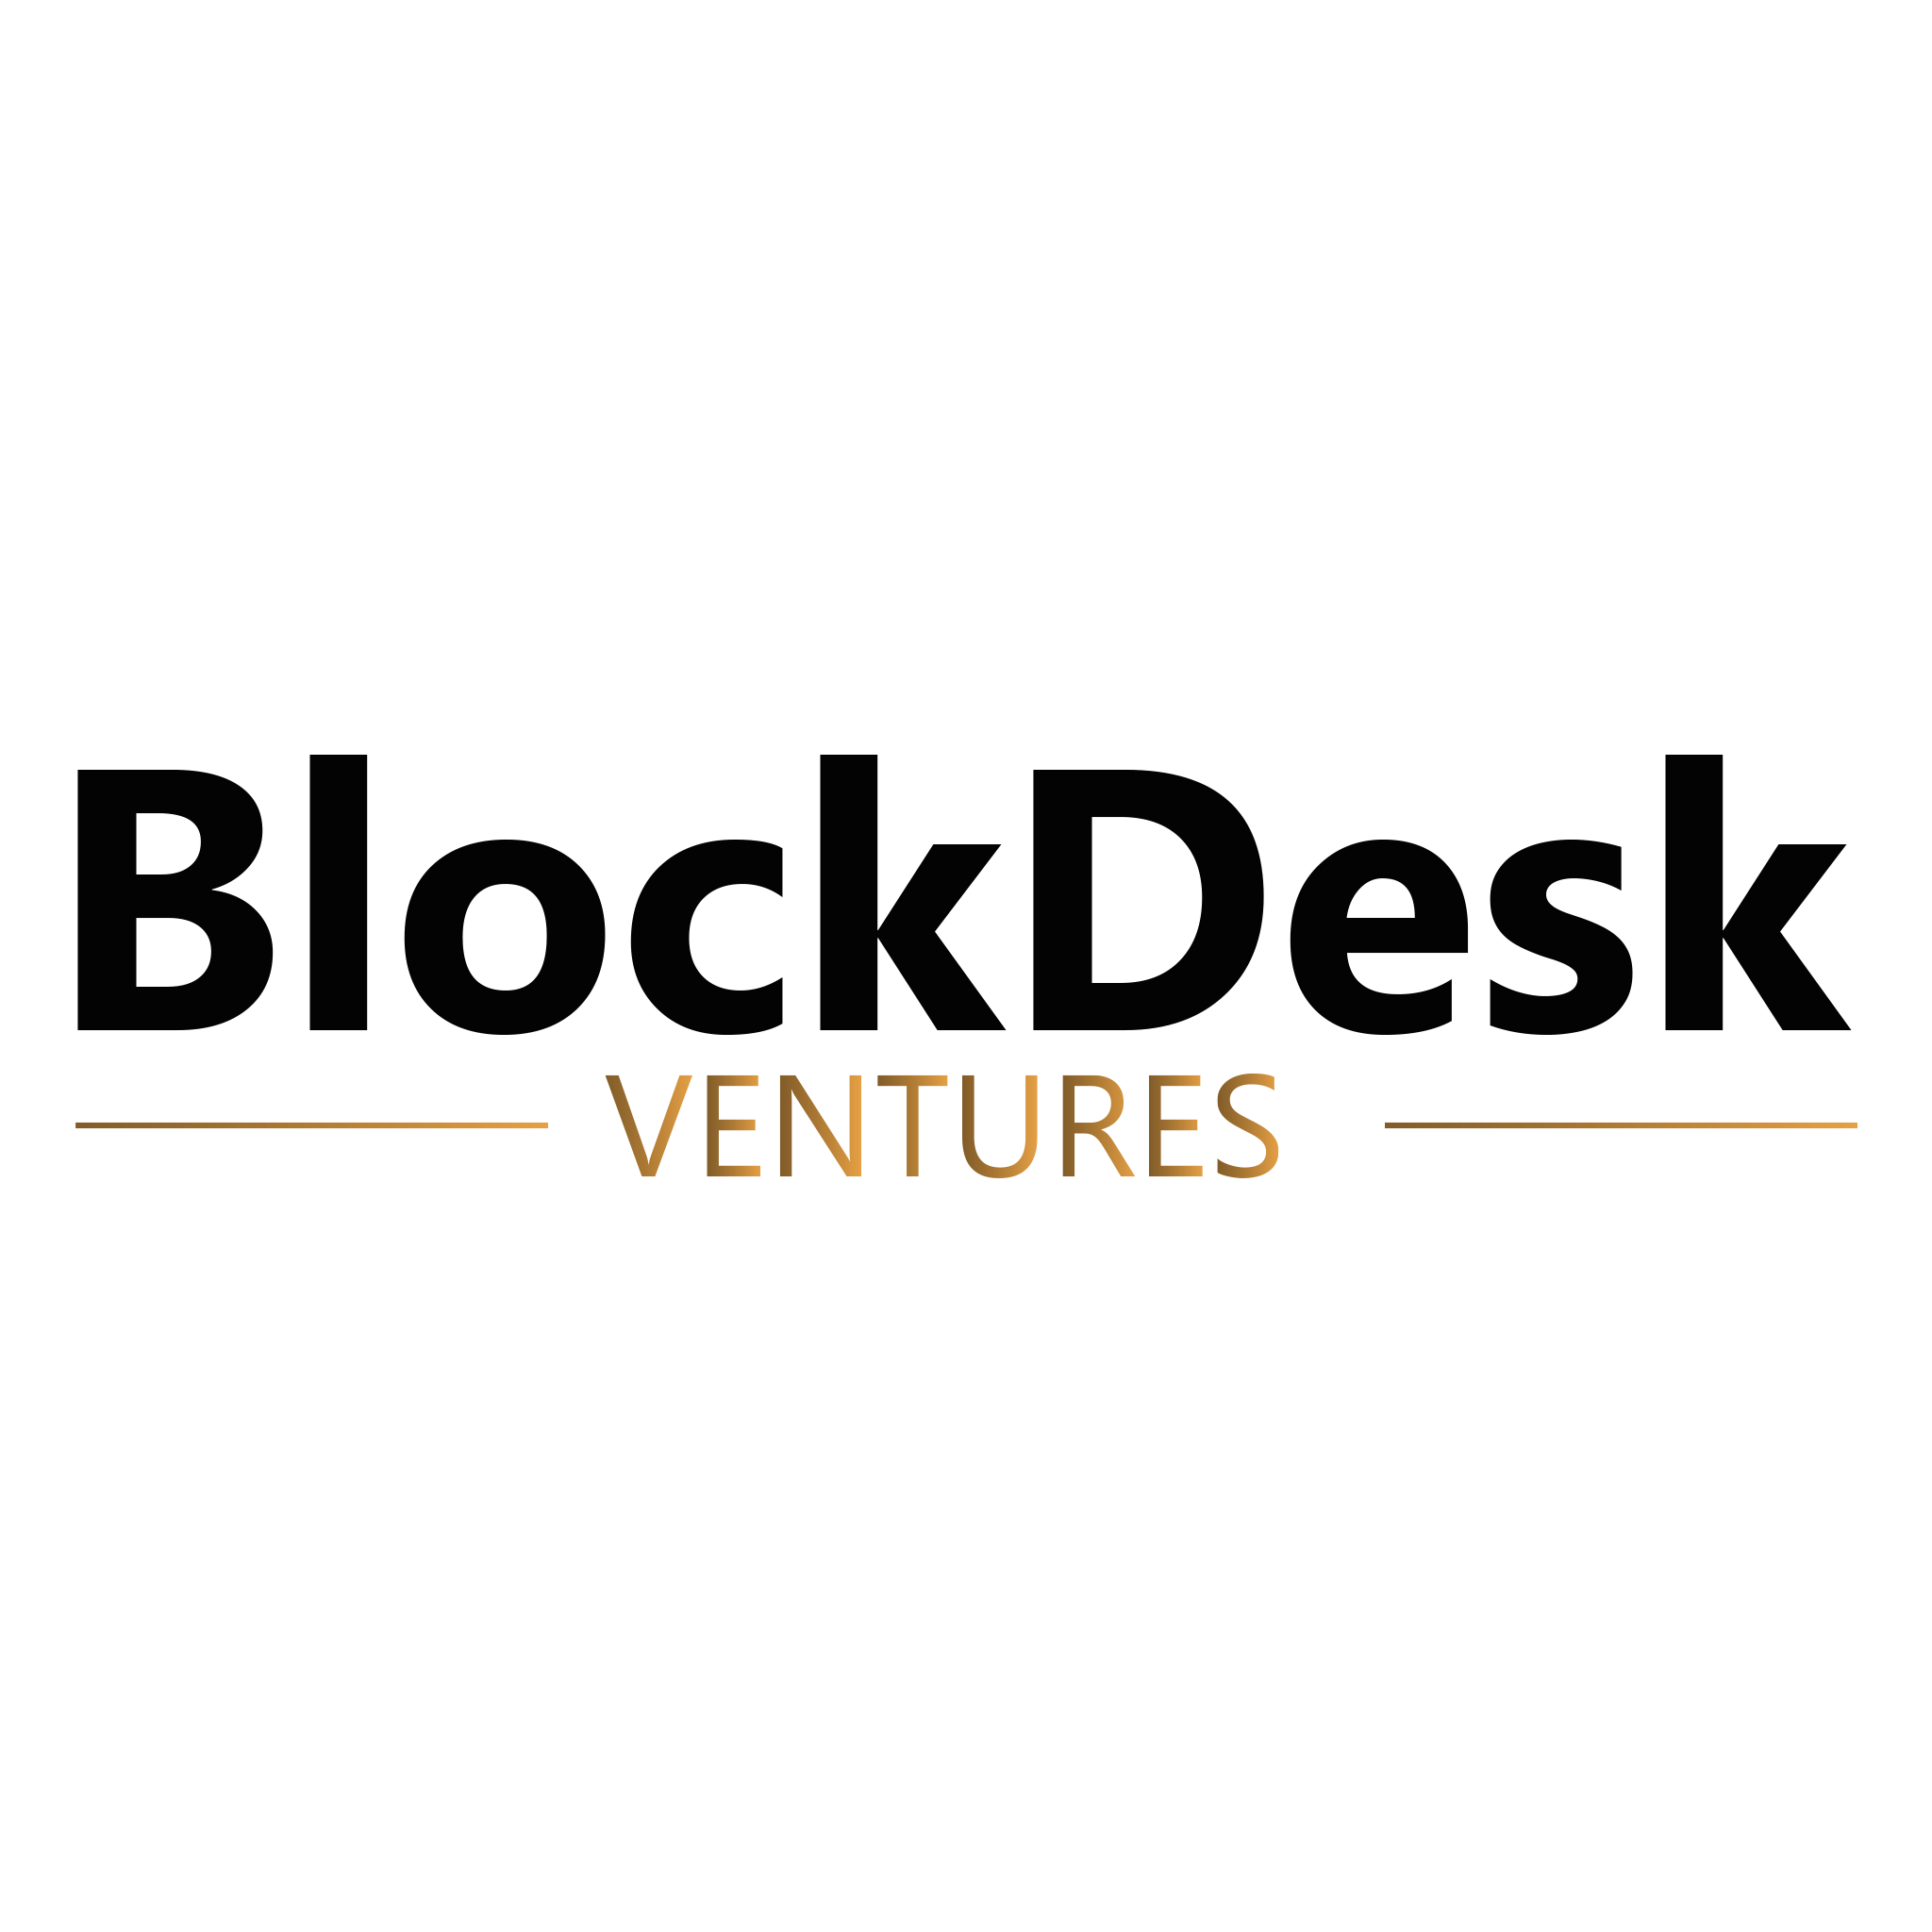 BlockDesk Ventures